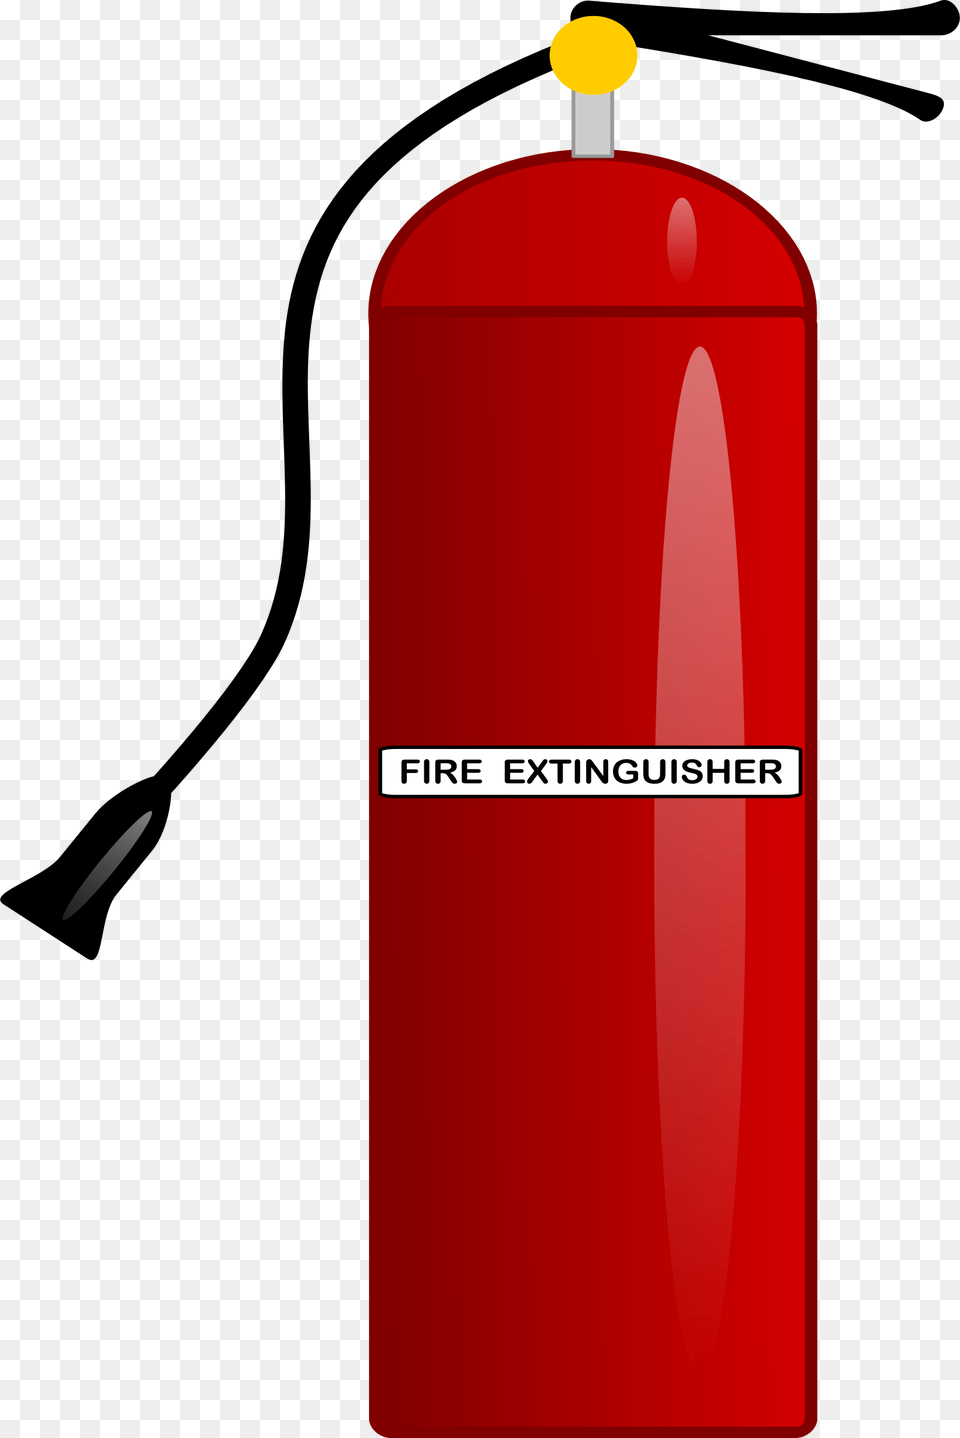 Extinguisher Images Download, Cylinder, Mailbox Free Transparent Png